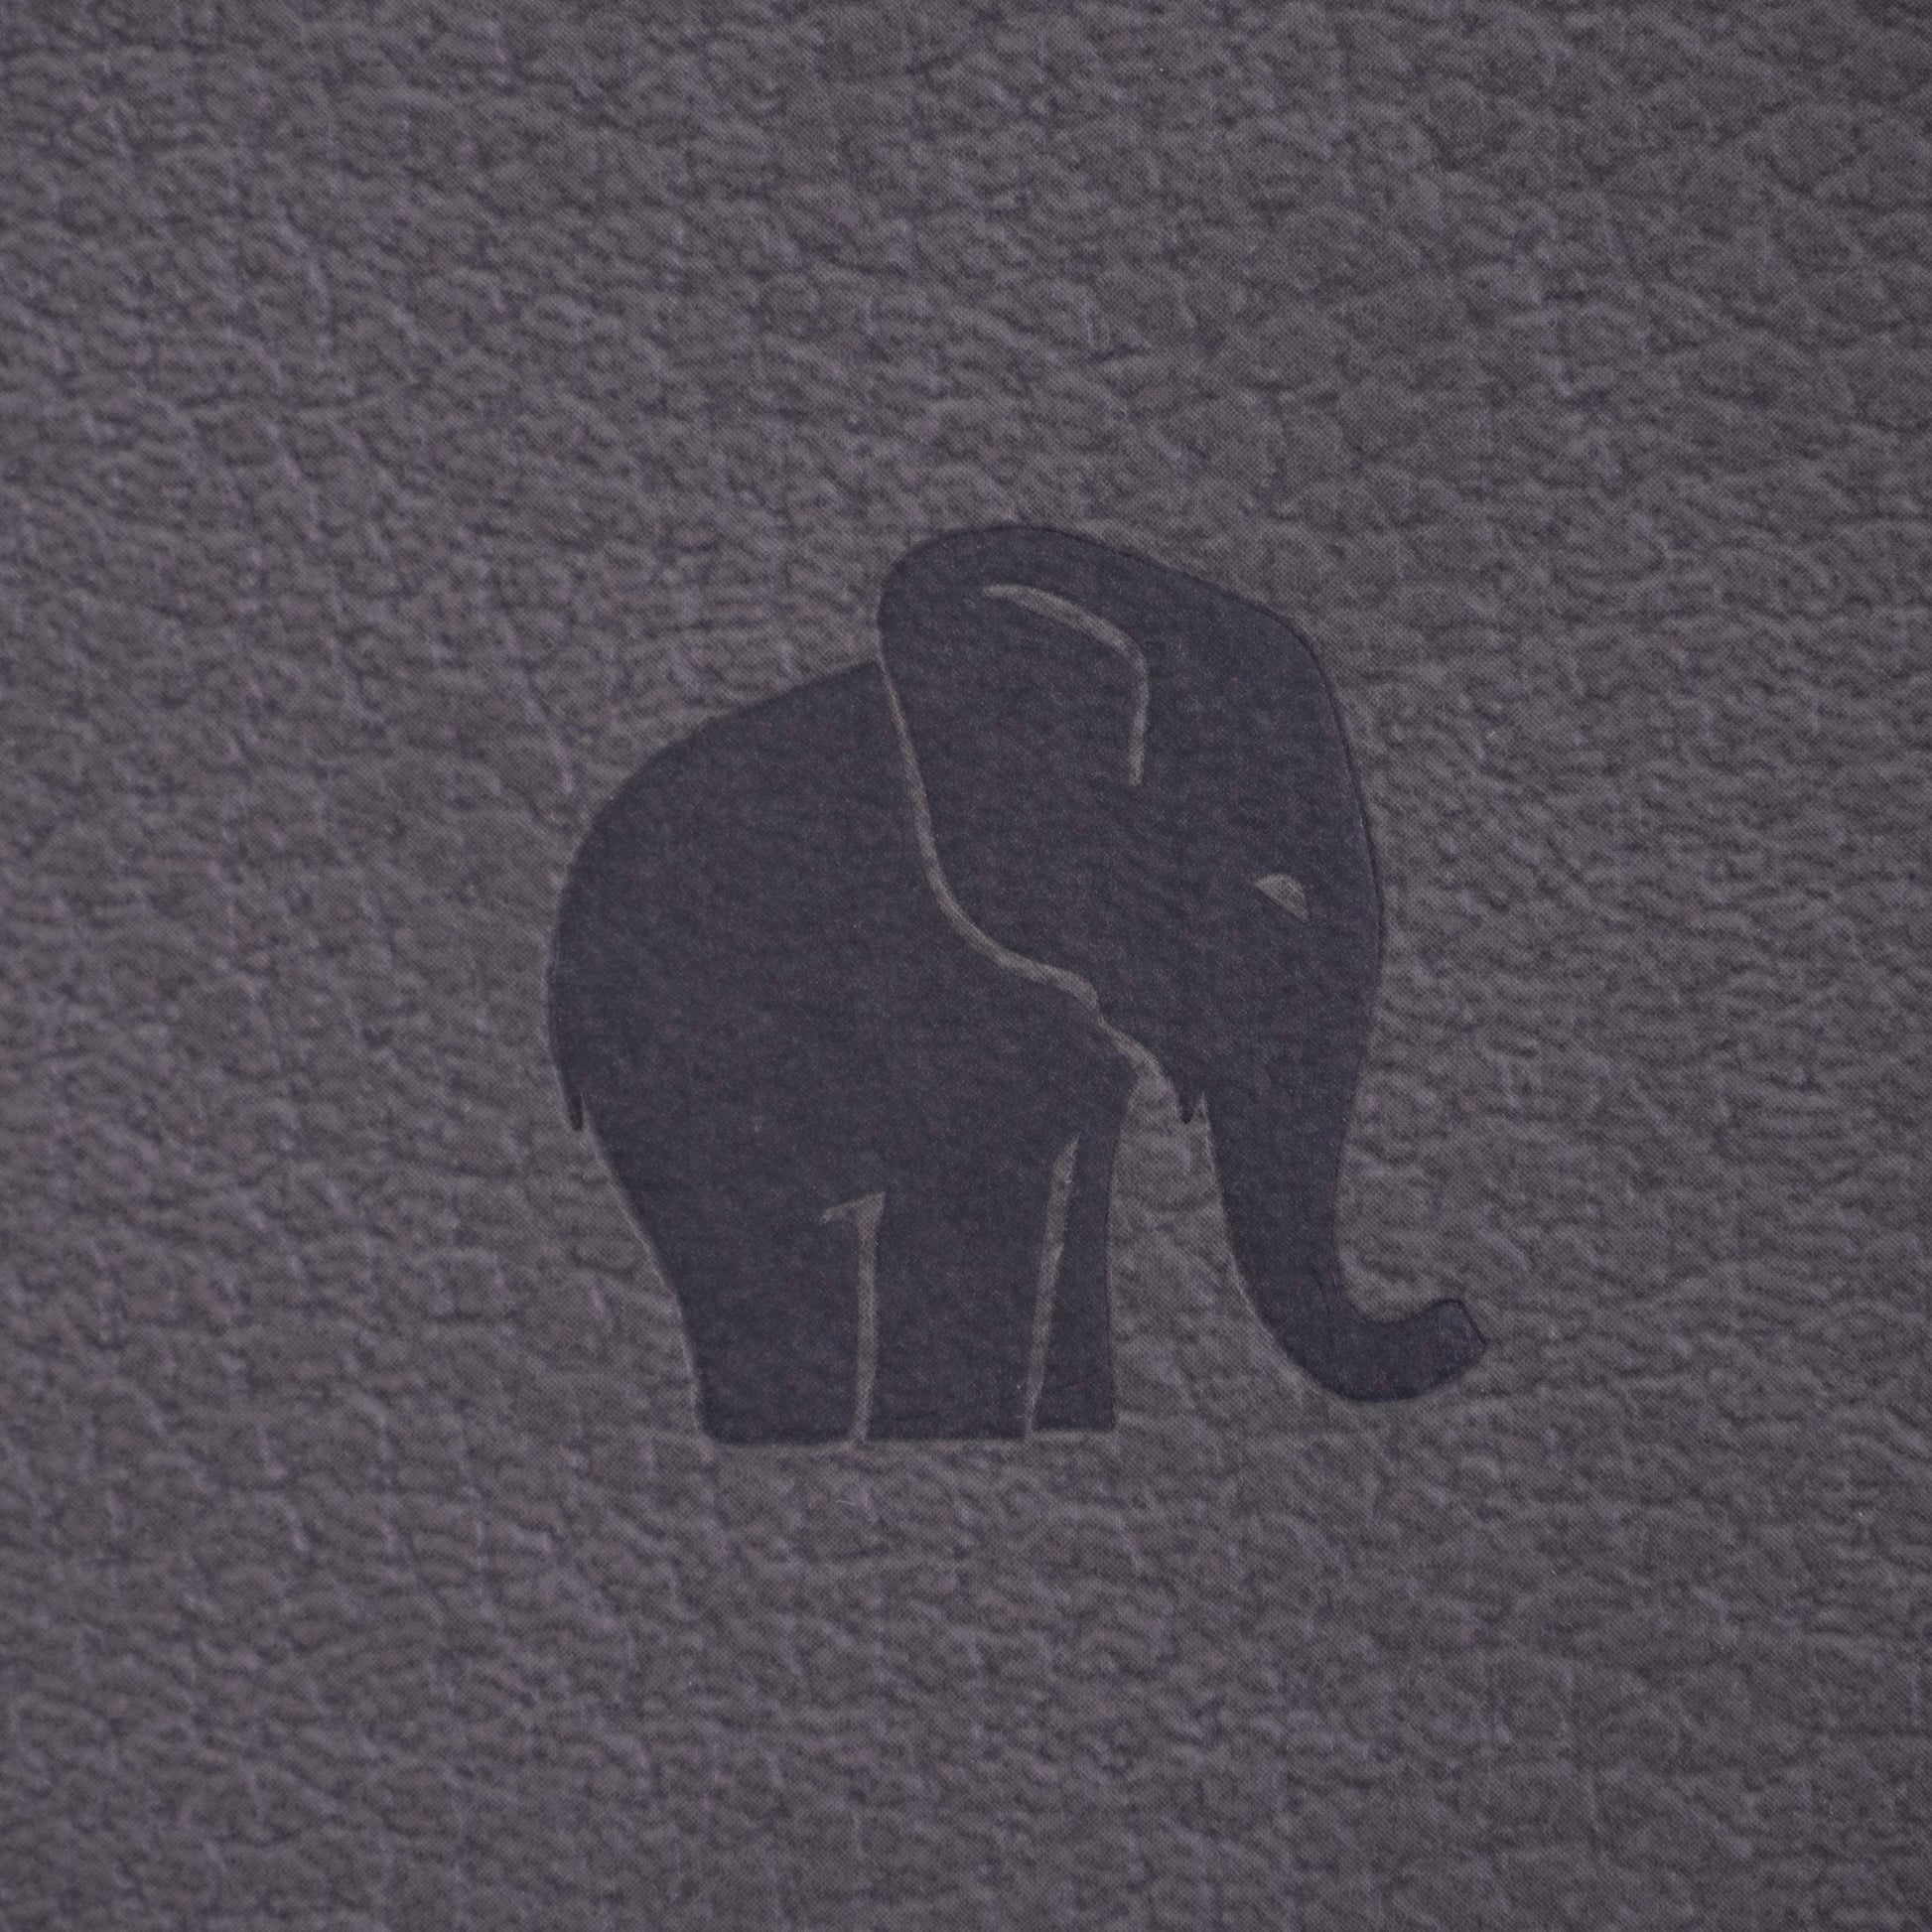 Dingbats* Wildlife A5+ Grey Elephant Notatbok ‑ Ruter